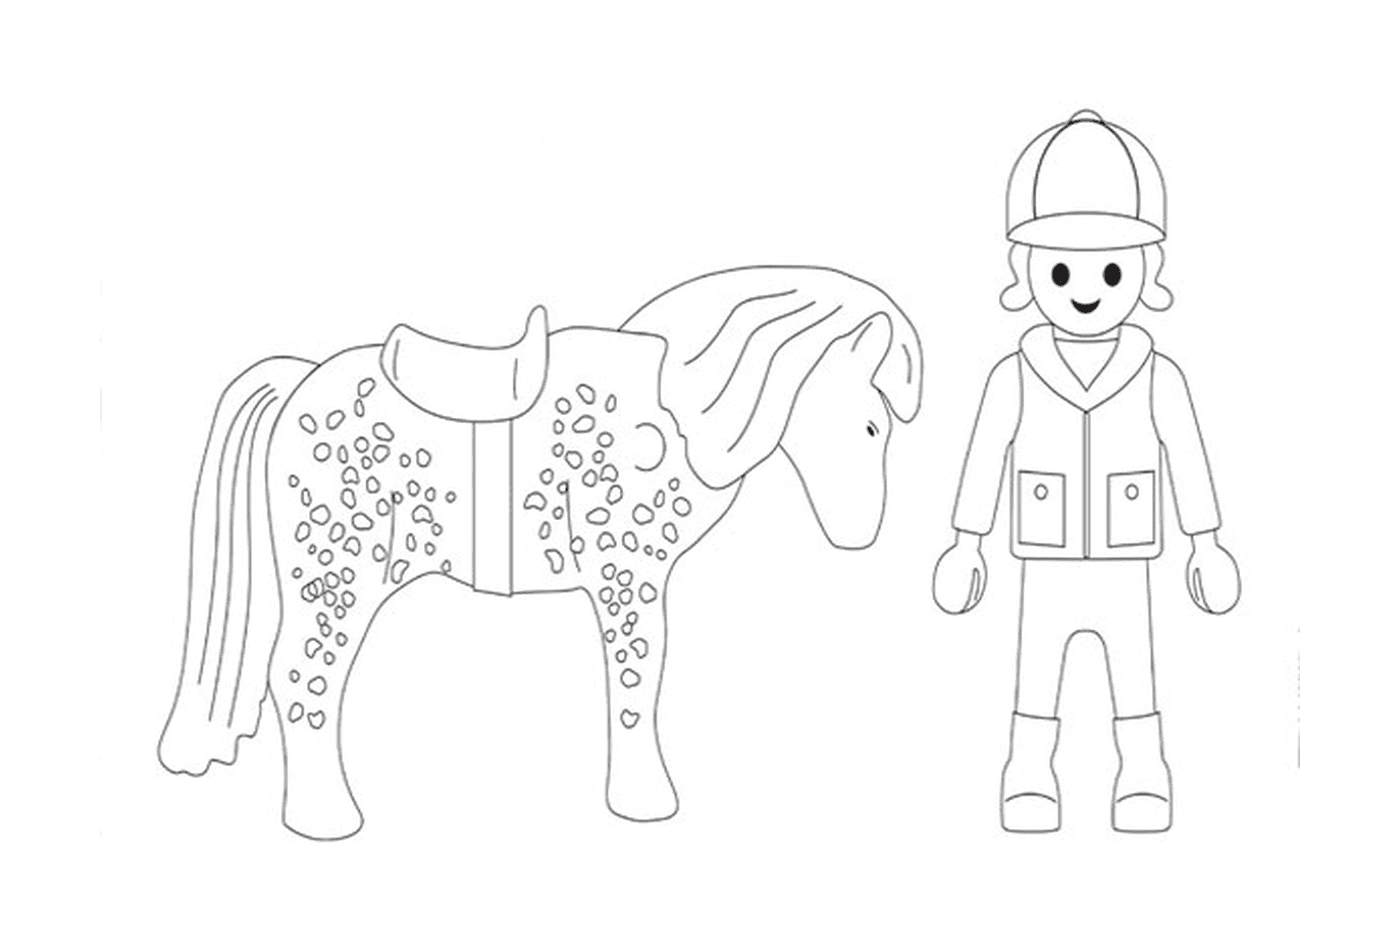 Playmobil caballo - Imagen de una persona y un caballo